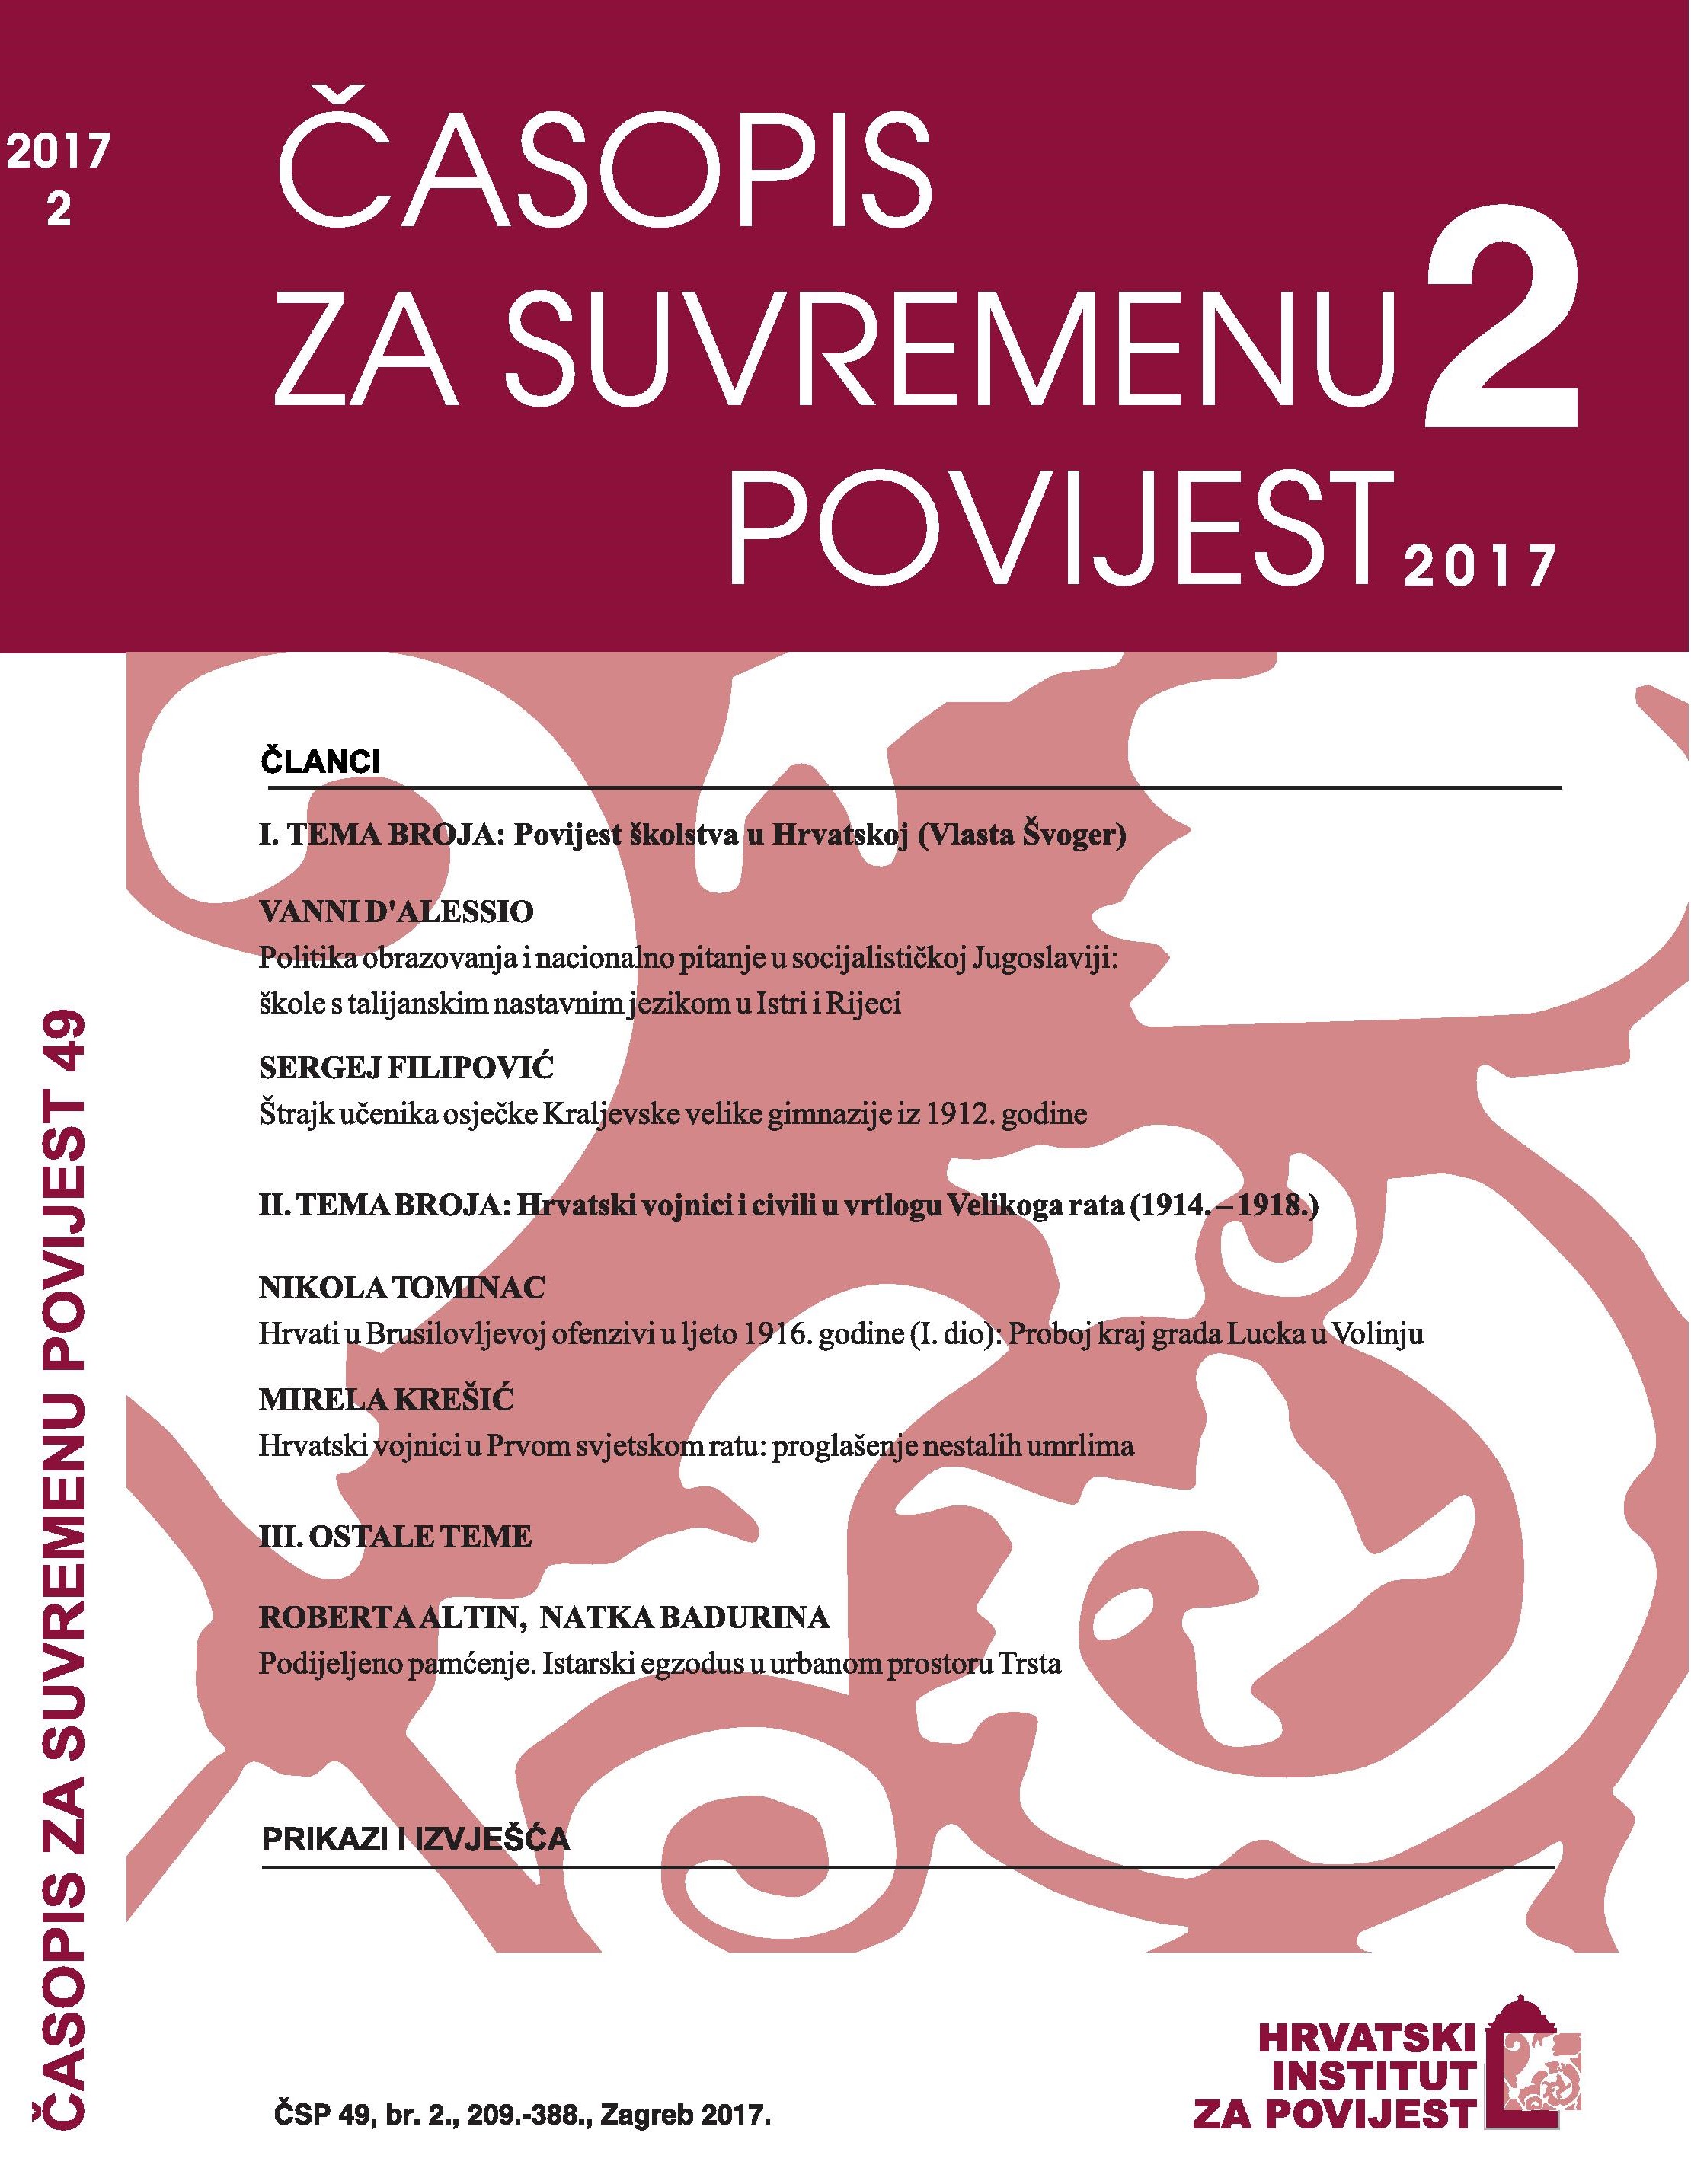 Tematski blok o povijesti školstva u Hrvatskoj